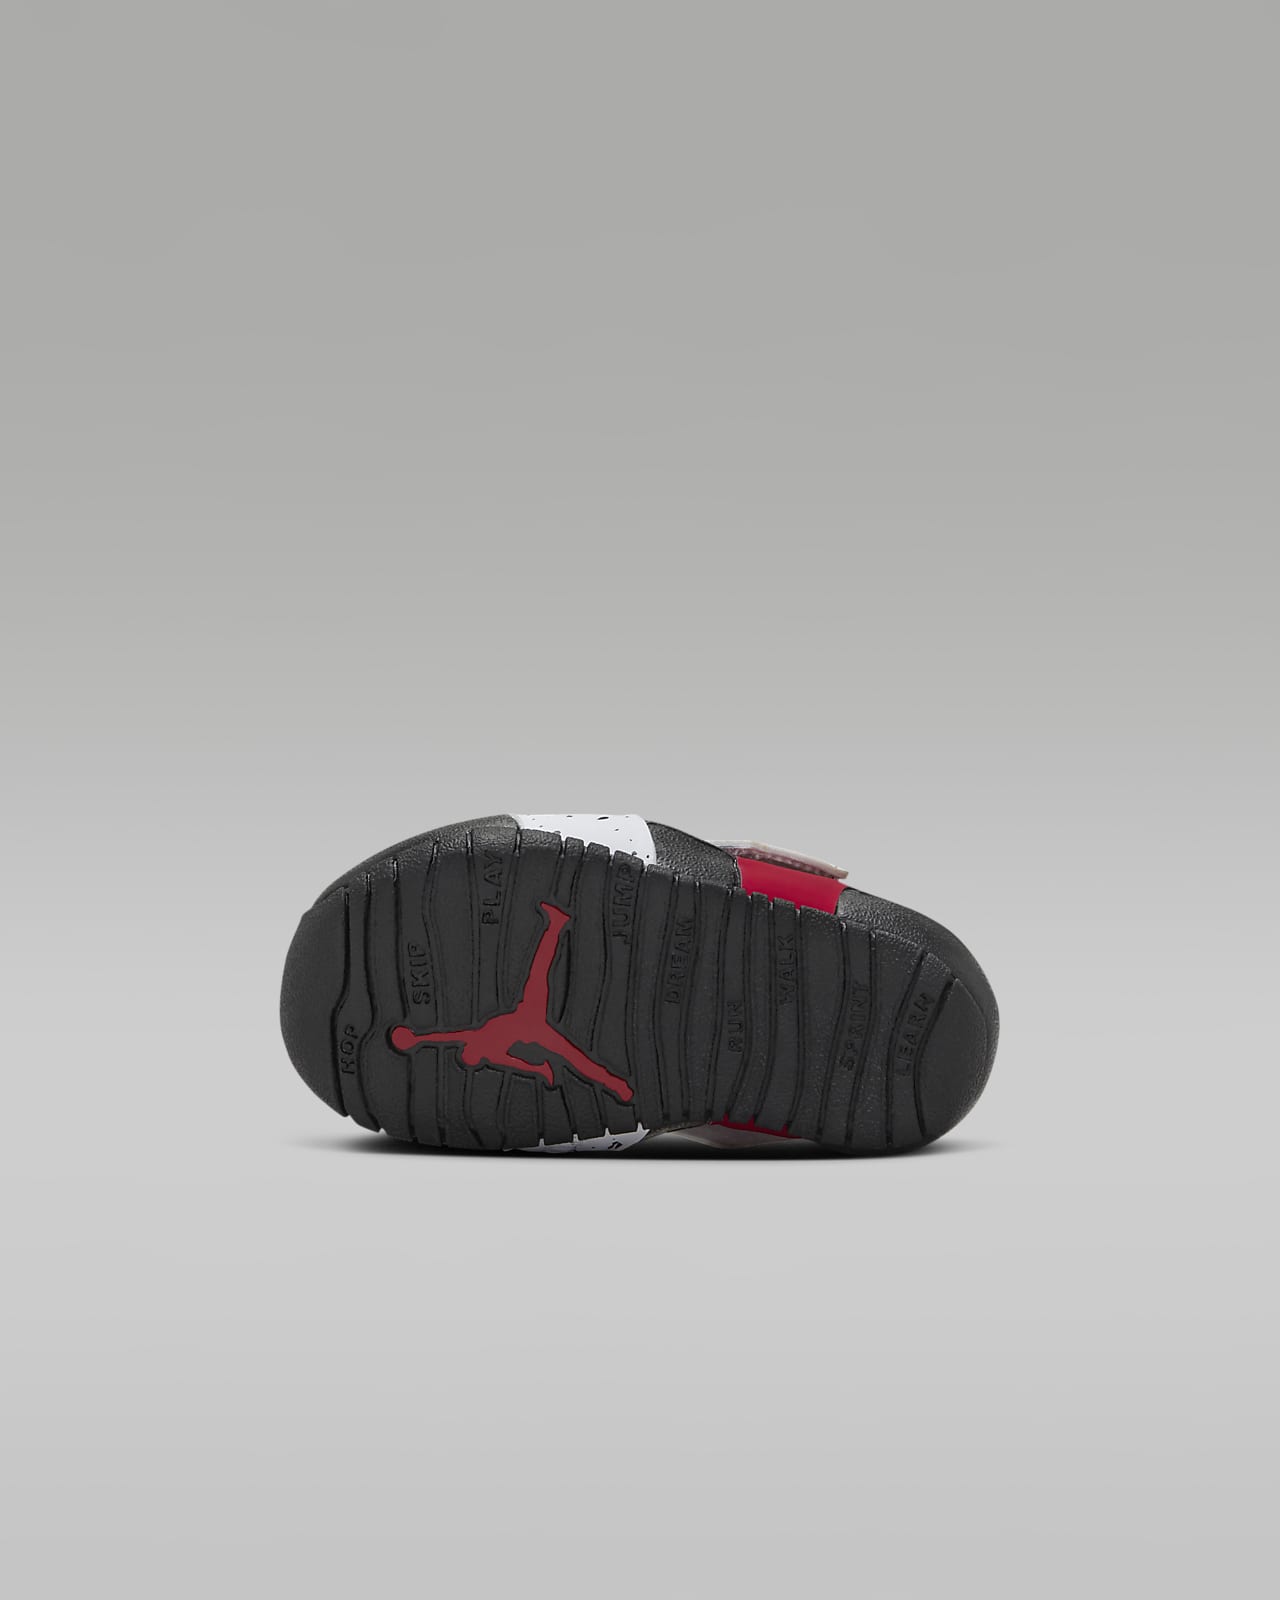 Jordan Flare Baby and Toddler Shoe. Nike LU